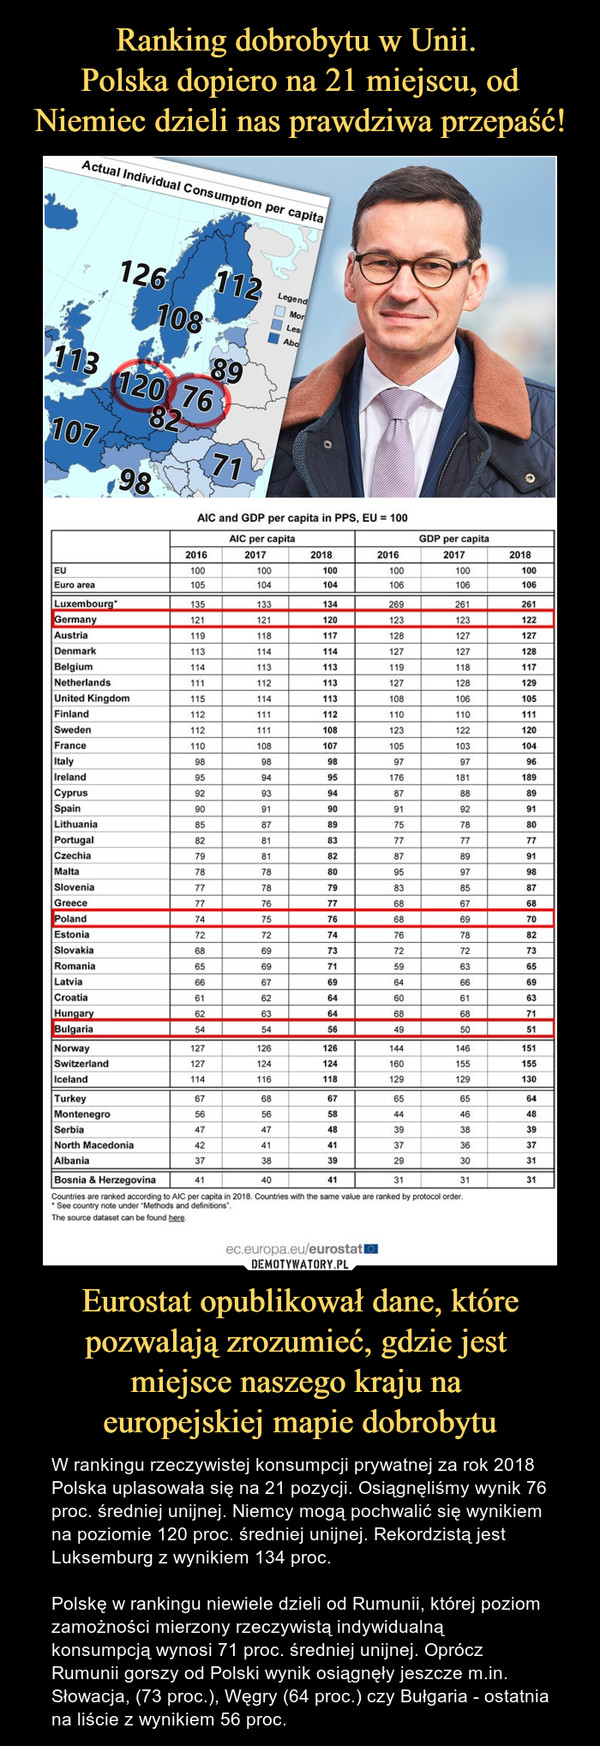 Ranking dobrobytu w Unii. 
Polska dopiero na 21 miejscu, od Niemiec dzieli nas prawdziwa przepaść! Eurostat opublikował dane, które pozwalają zrozumieć, gdzie jest 
miejsce naszego kraju na 
europejskiej mapie dobrobytu